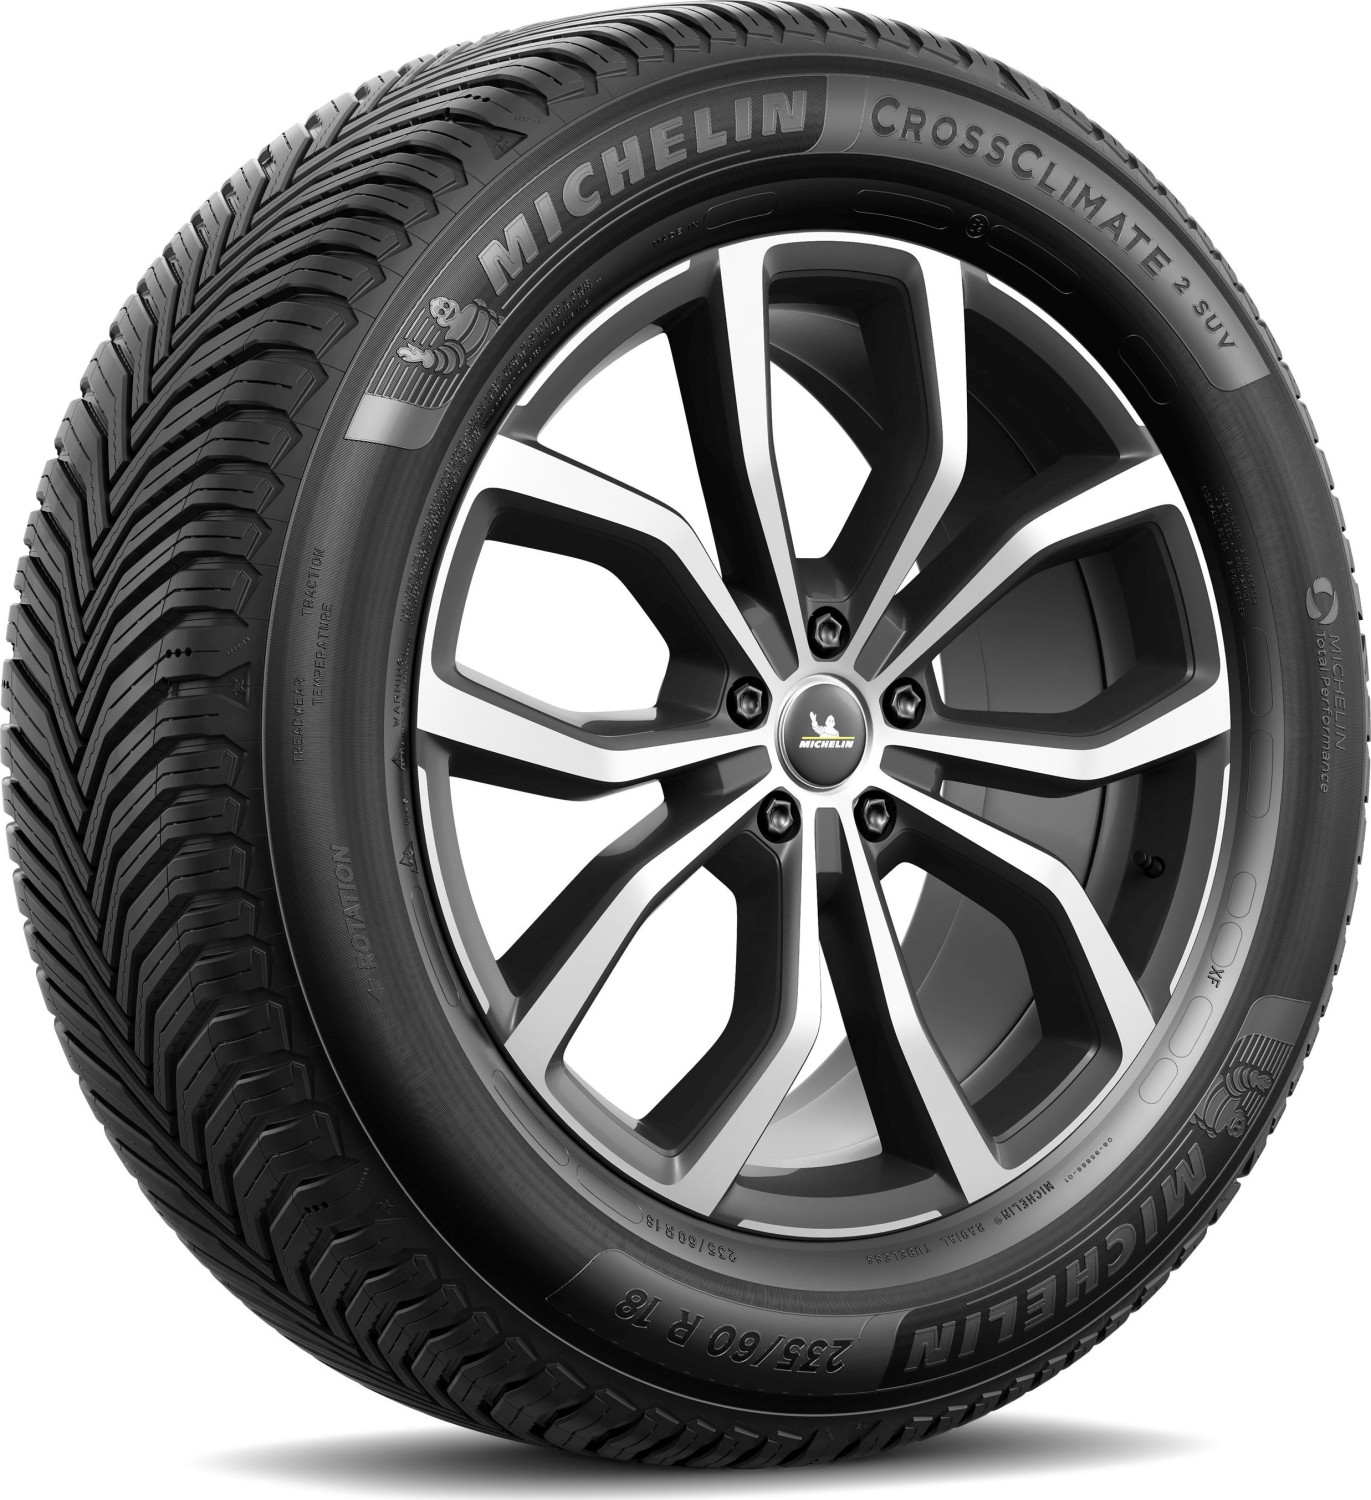 103V 225/55 183,93 Michelin ab CrossClimate € (162706) heise (2023) Preisvergleich online SUV S1 Deutschland 2 R19 | XL